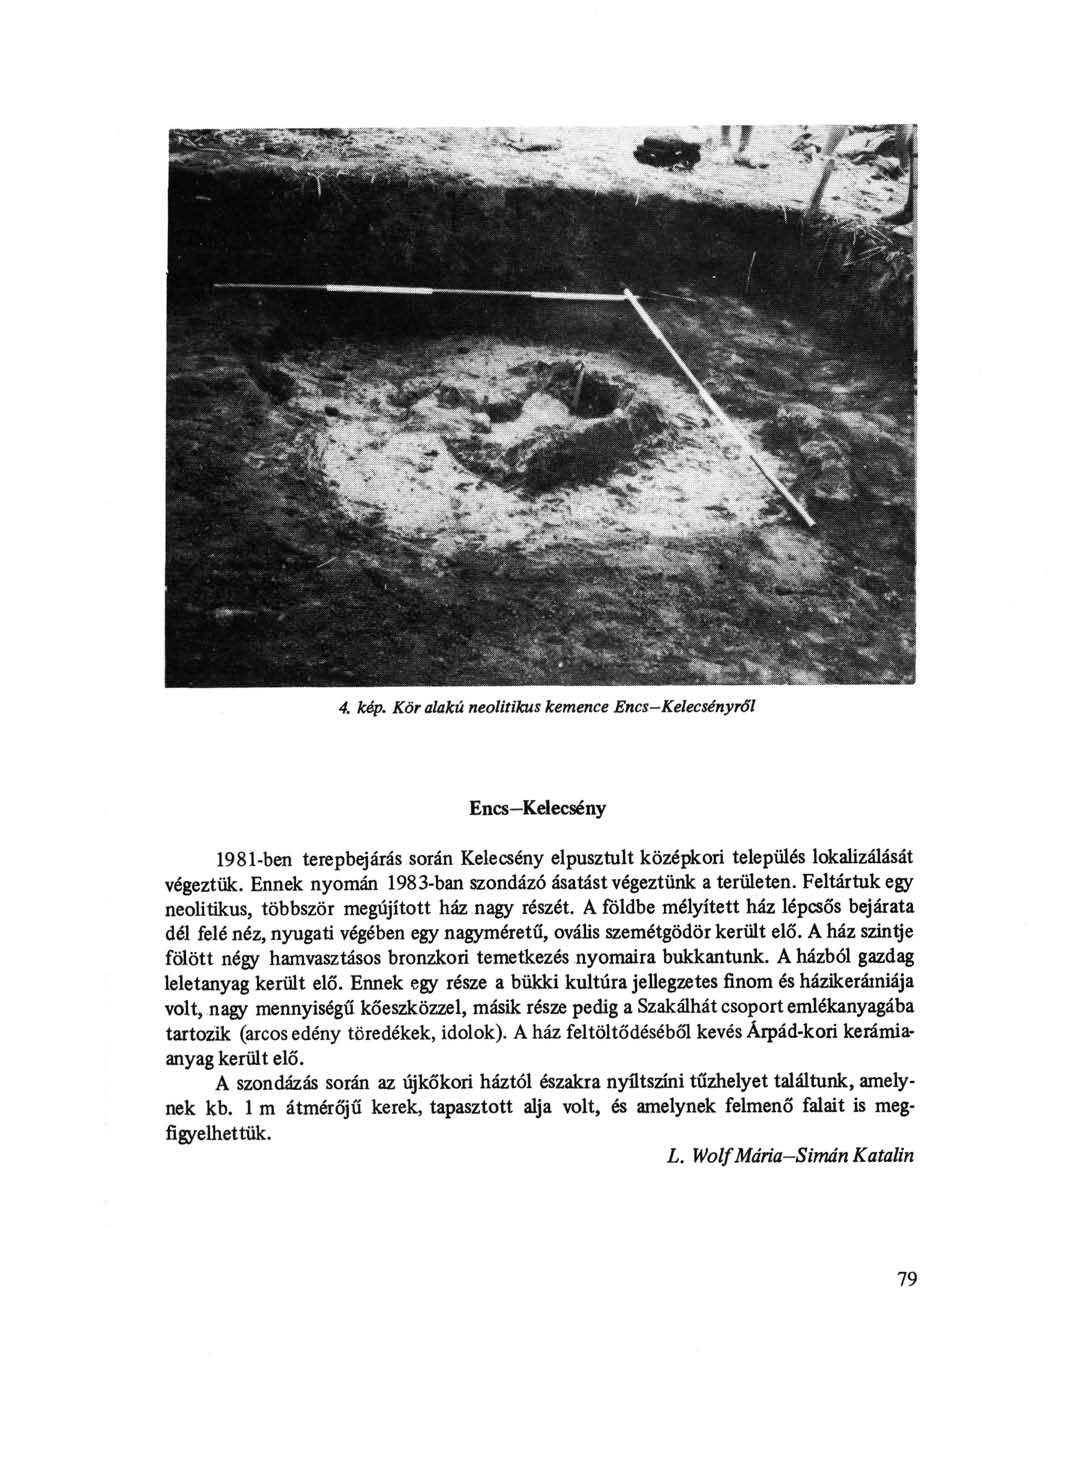 4. kép. Kör alakú neolitikus kemence Encs-Kelecsényről Encs Kelecsény 1981-ben terepbejárás során Kelecsény elpusztult középkori település lokalizálását végeztük.